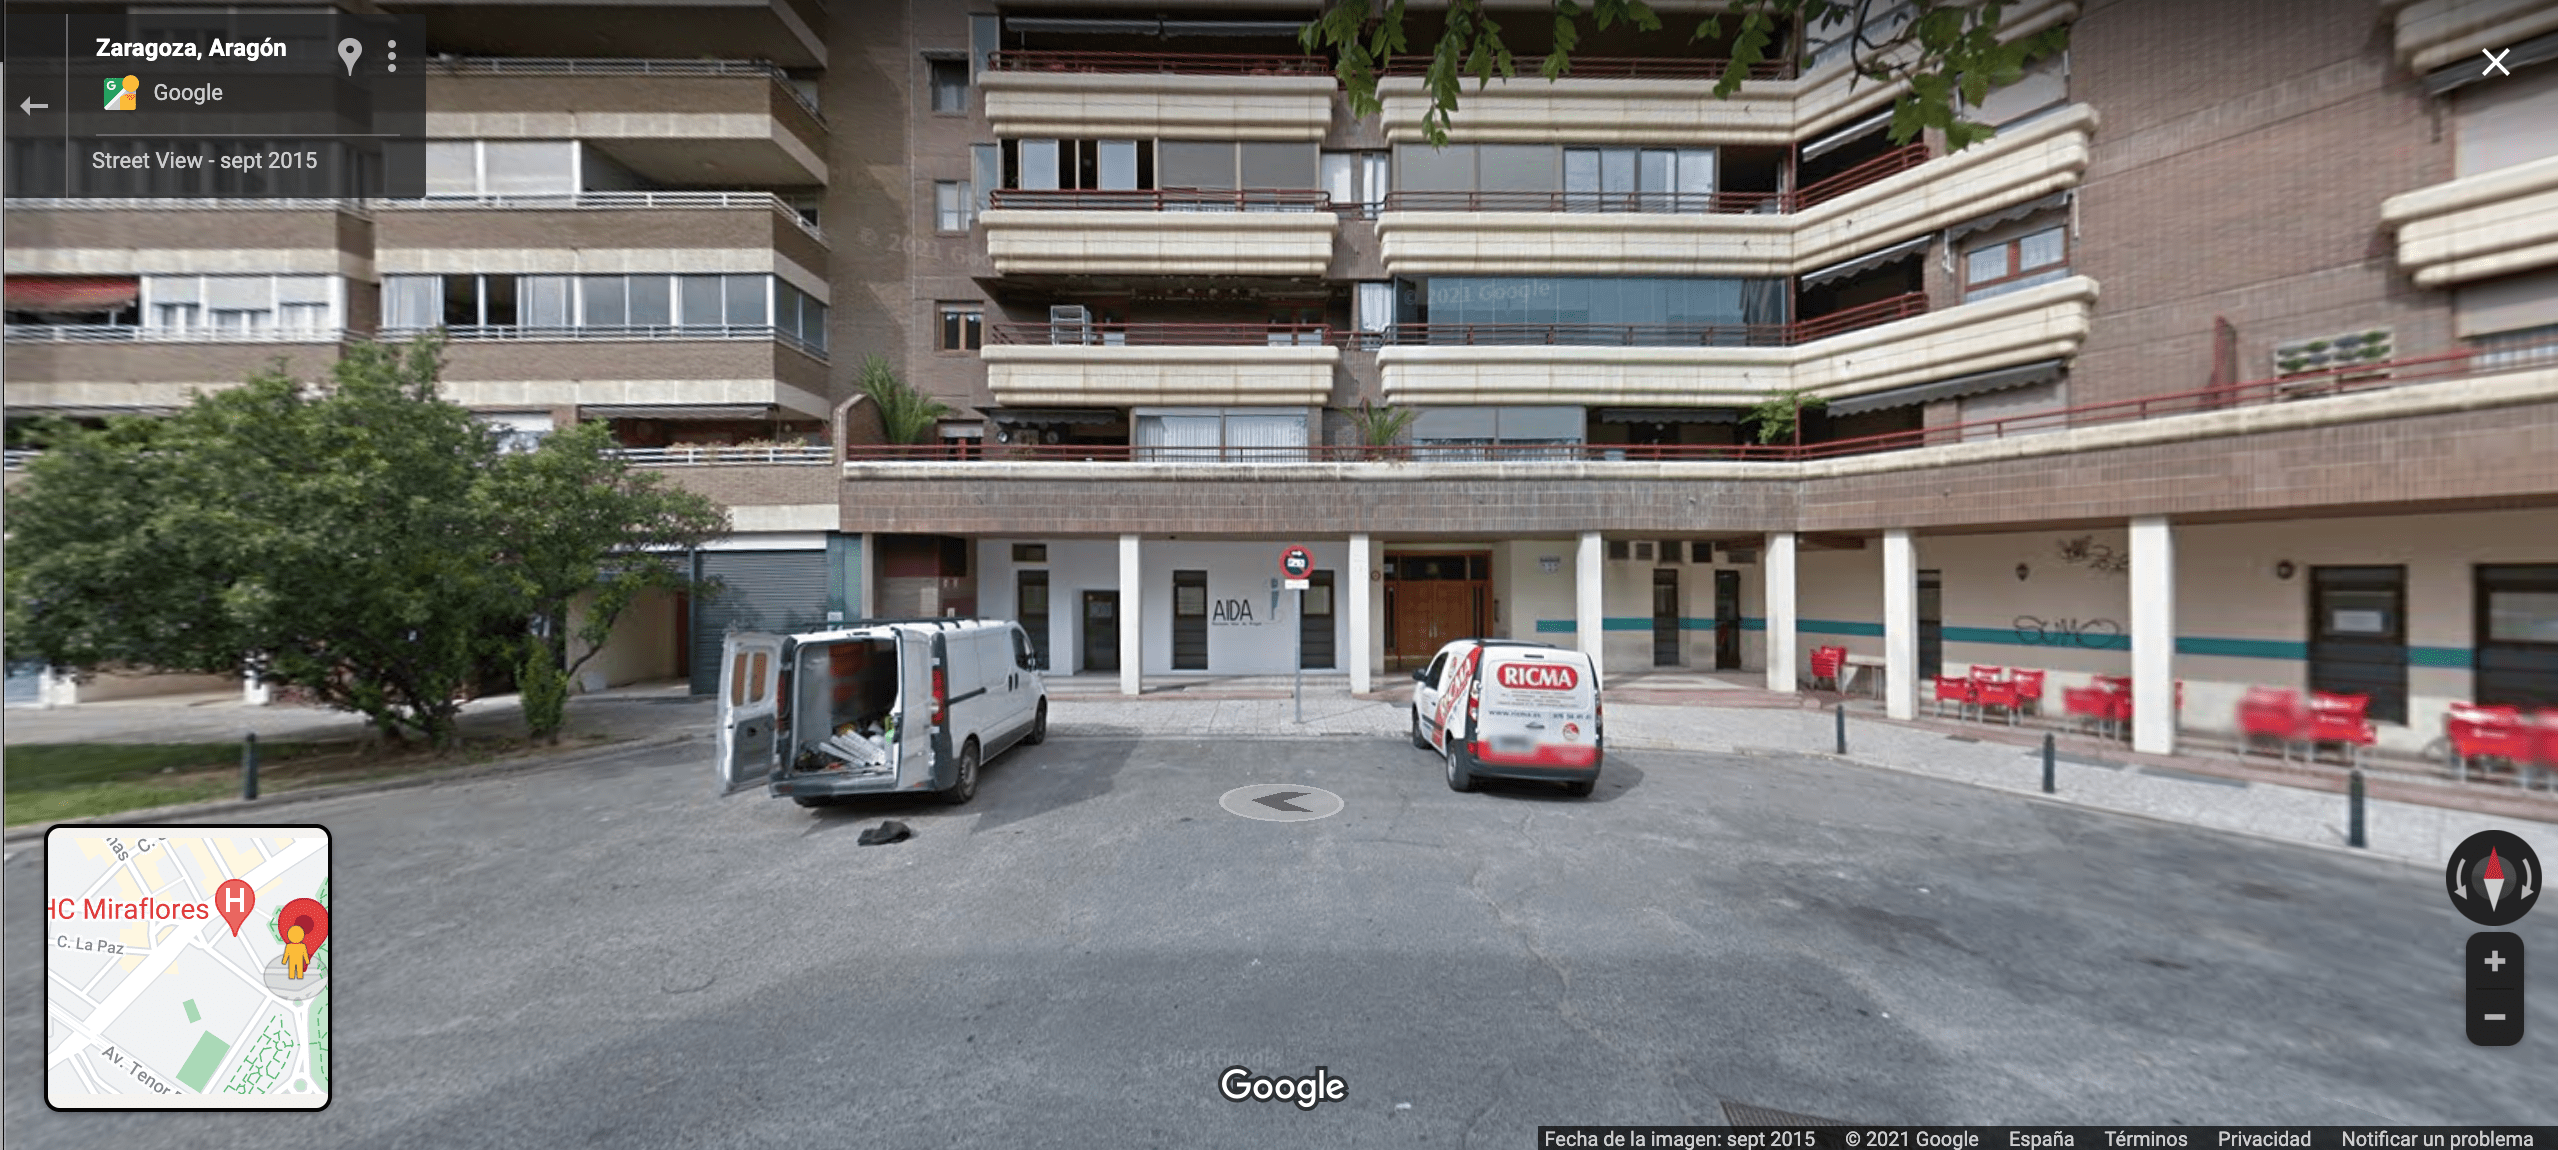 Imágenes Recogidas de Street View - Google 2